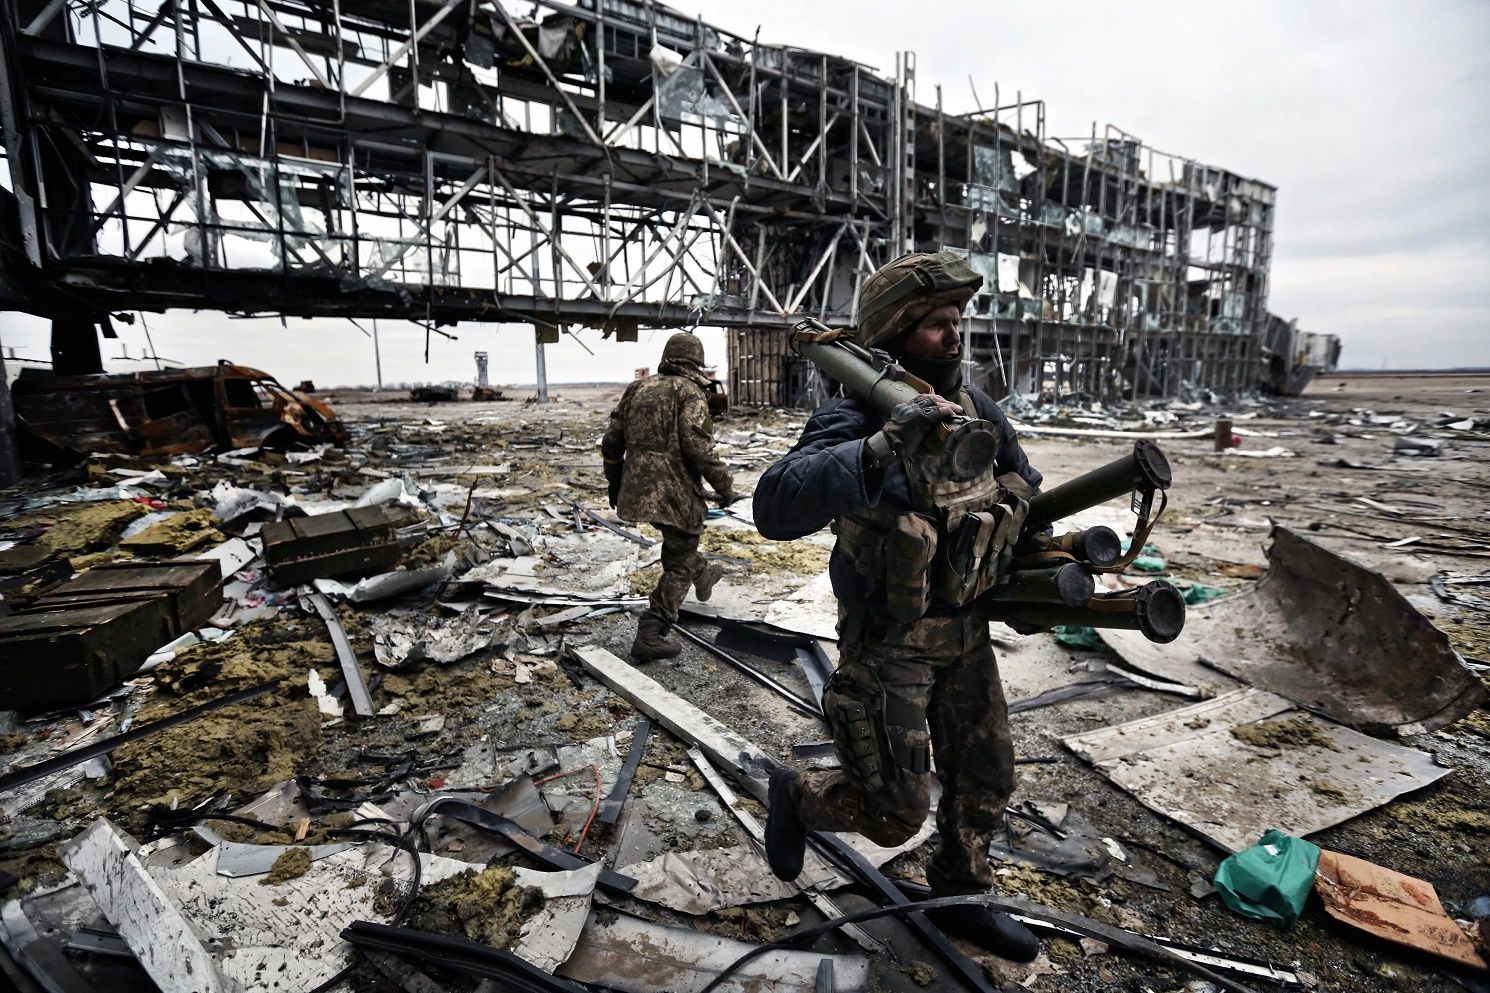 Річниця виходу "кіборгів" з Донецького аеропорту: історія героїчної оборони